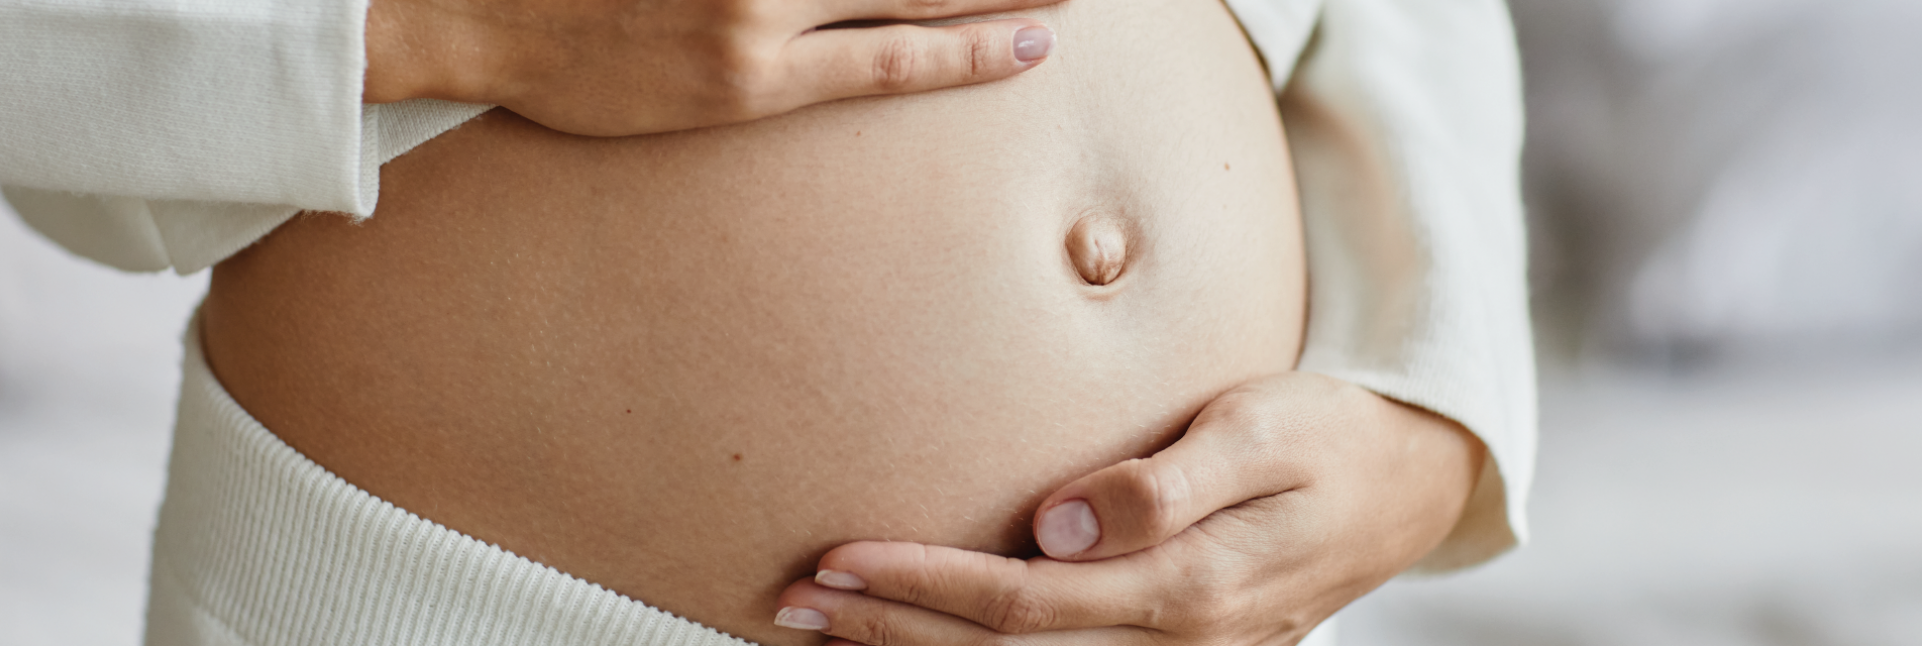 5 consejos para la sequedad vaginal en el embarazo y postparto